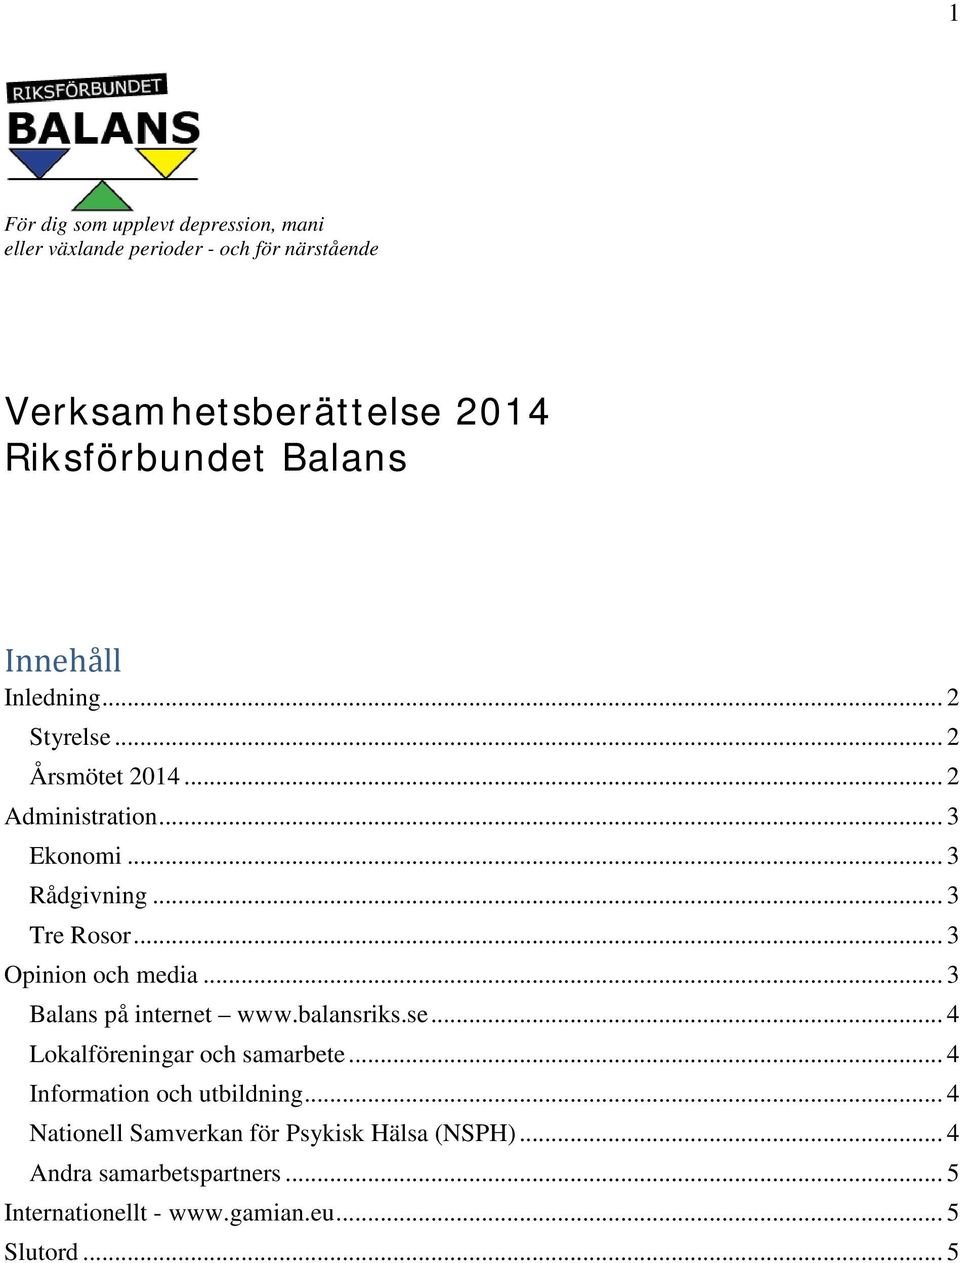 .. 3 Opinion och media... 3 Balans på internet www.balansriks.se... 4 Lokalföreningar och samarbete.